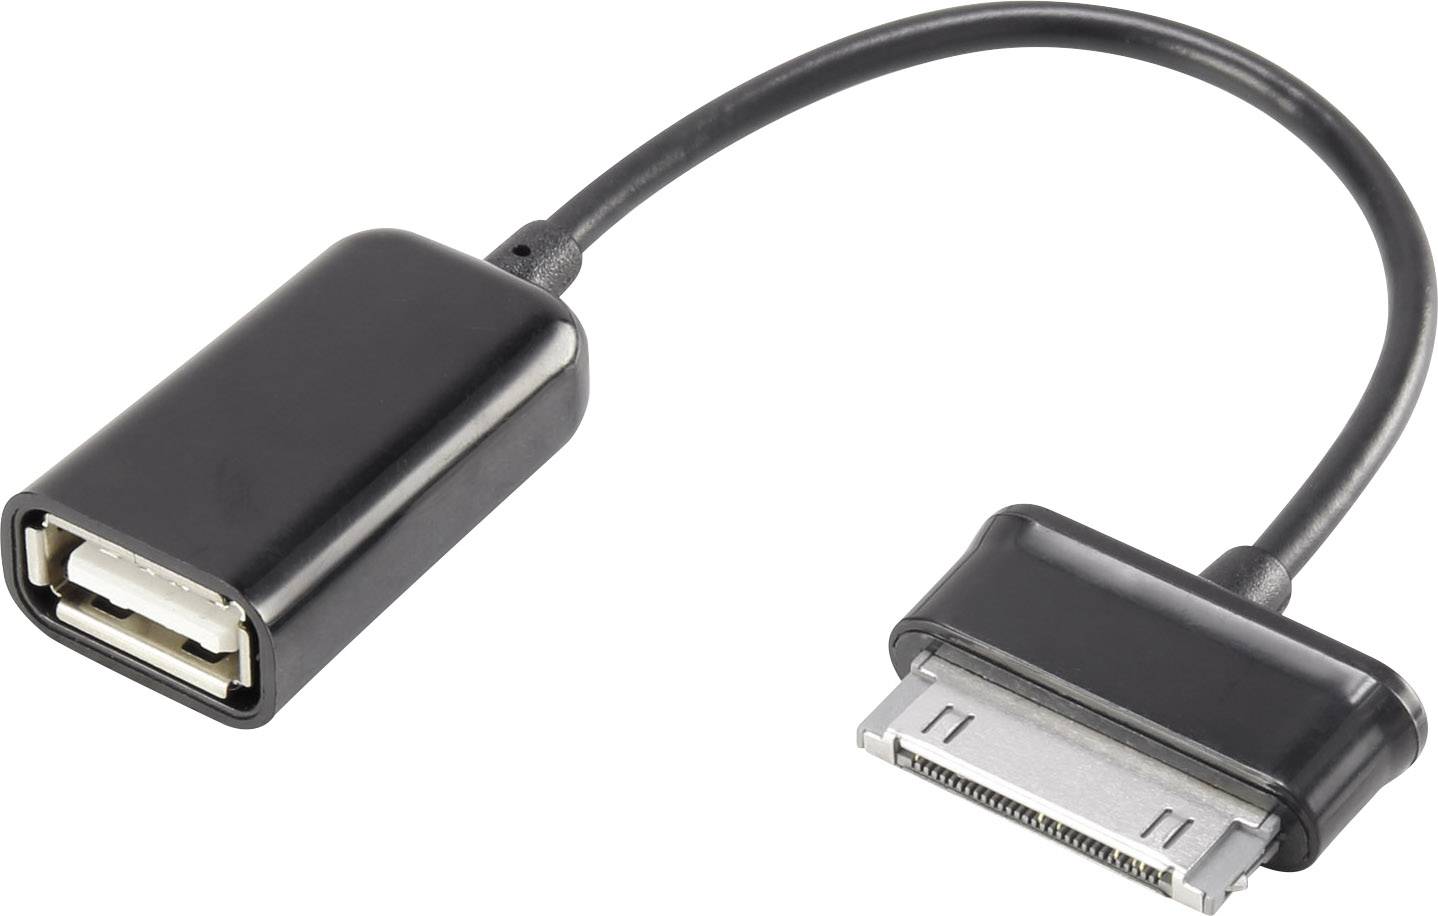 CONRAD Renkforce USB 2.0 Kabel [1x Samsung Stecker - 1x USB 2.0 Buchse A] 0.1 m Schwarz mit OTG-Funk